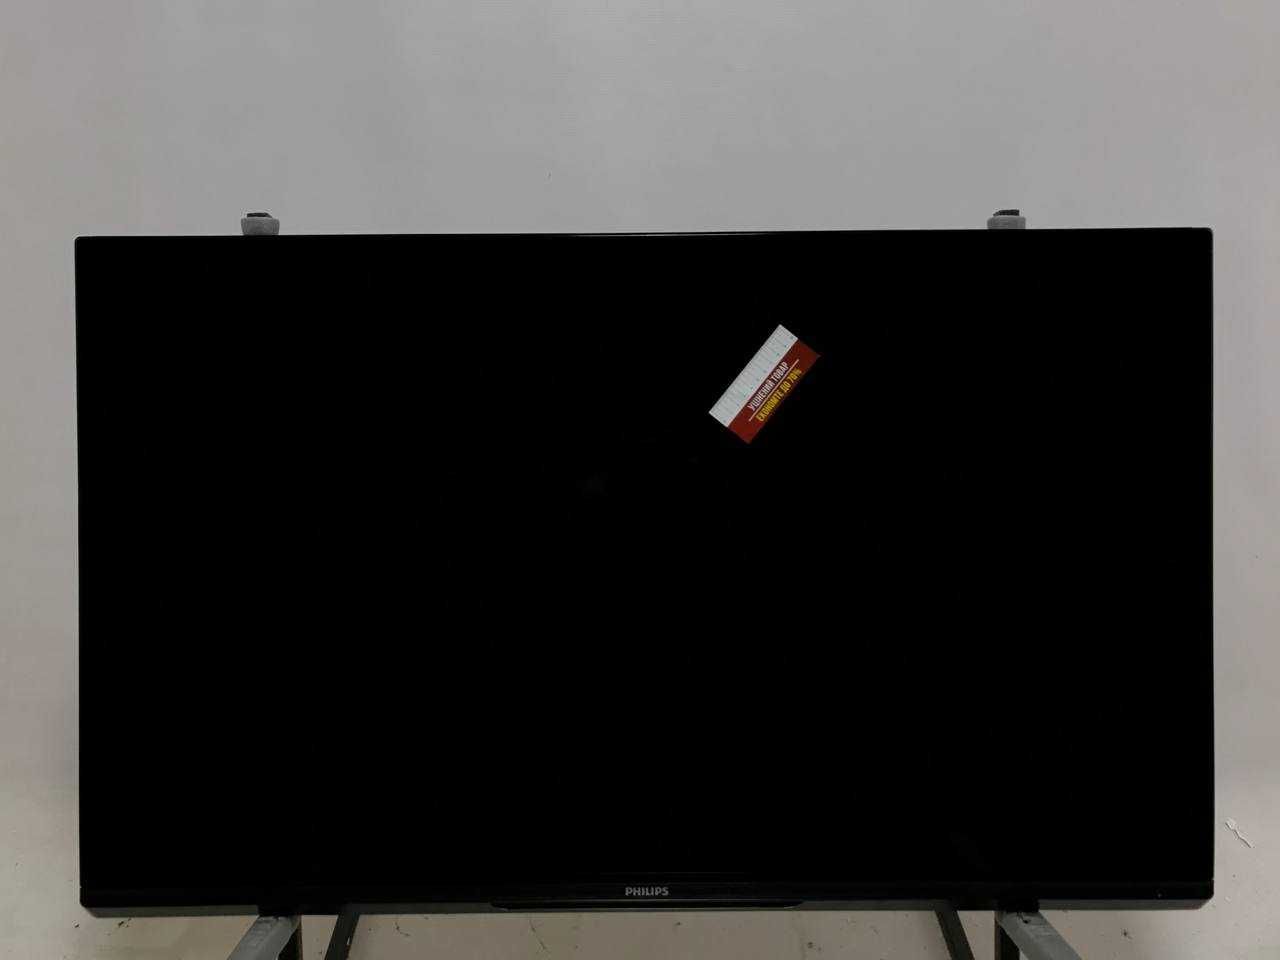 Скидка! Телевизор 47 дюймов Philips 47PFL6057K (Smart TV 3D Ambilight)